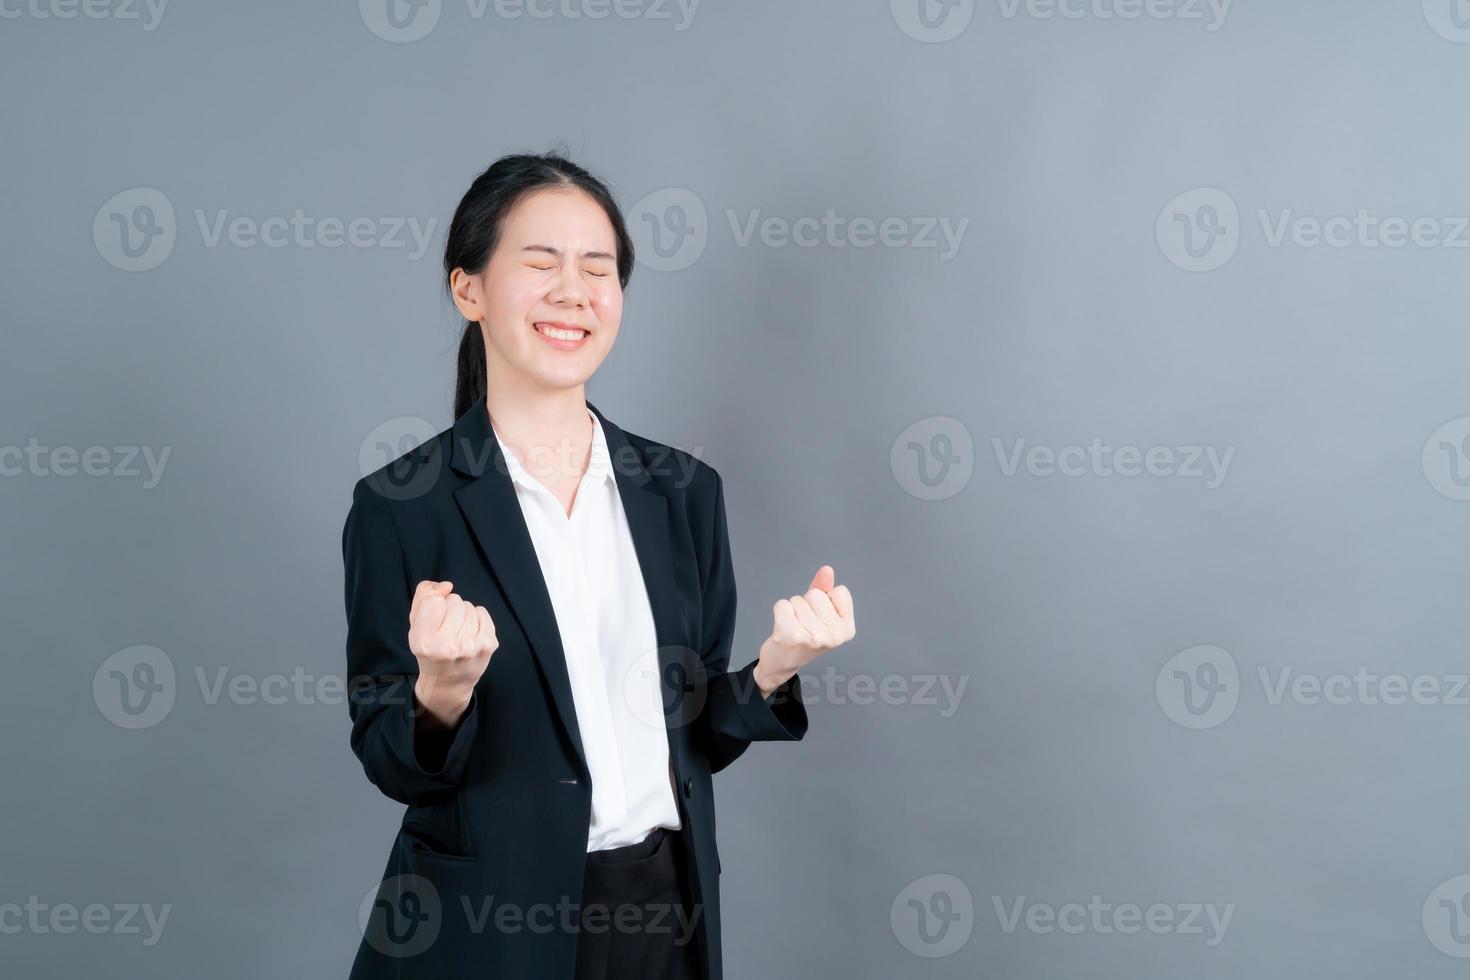 femme asiatique se réjouissant de son succès et de sa victoire en serrant les poings de joie. femme chanceuse étant heureuse d'atteindre son but et ses objectifs. émotions positives, sentiments. photo